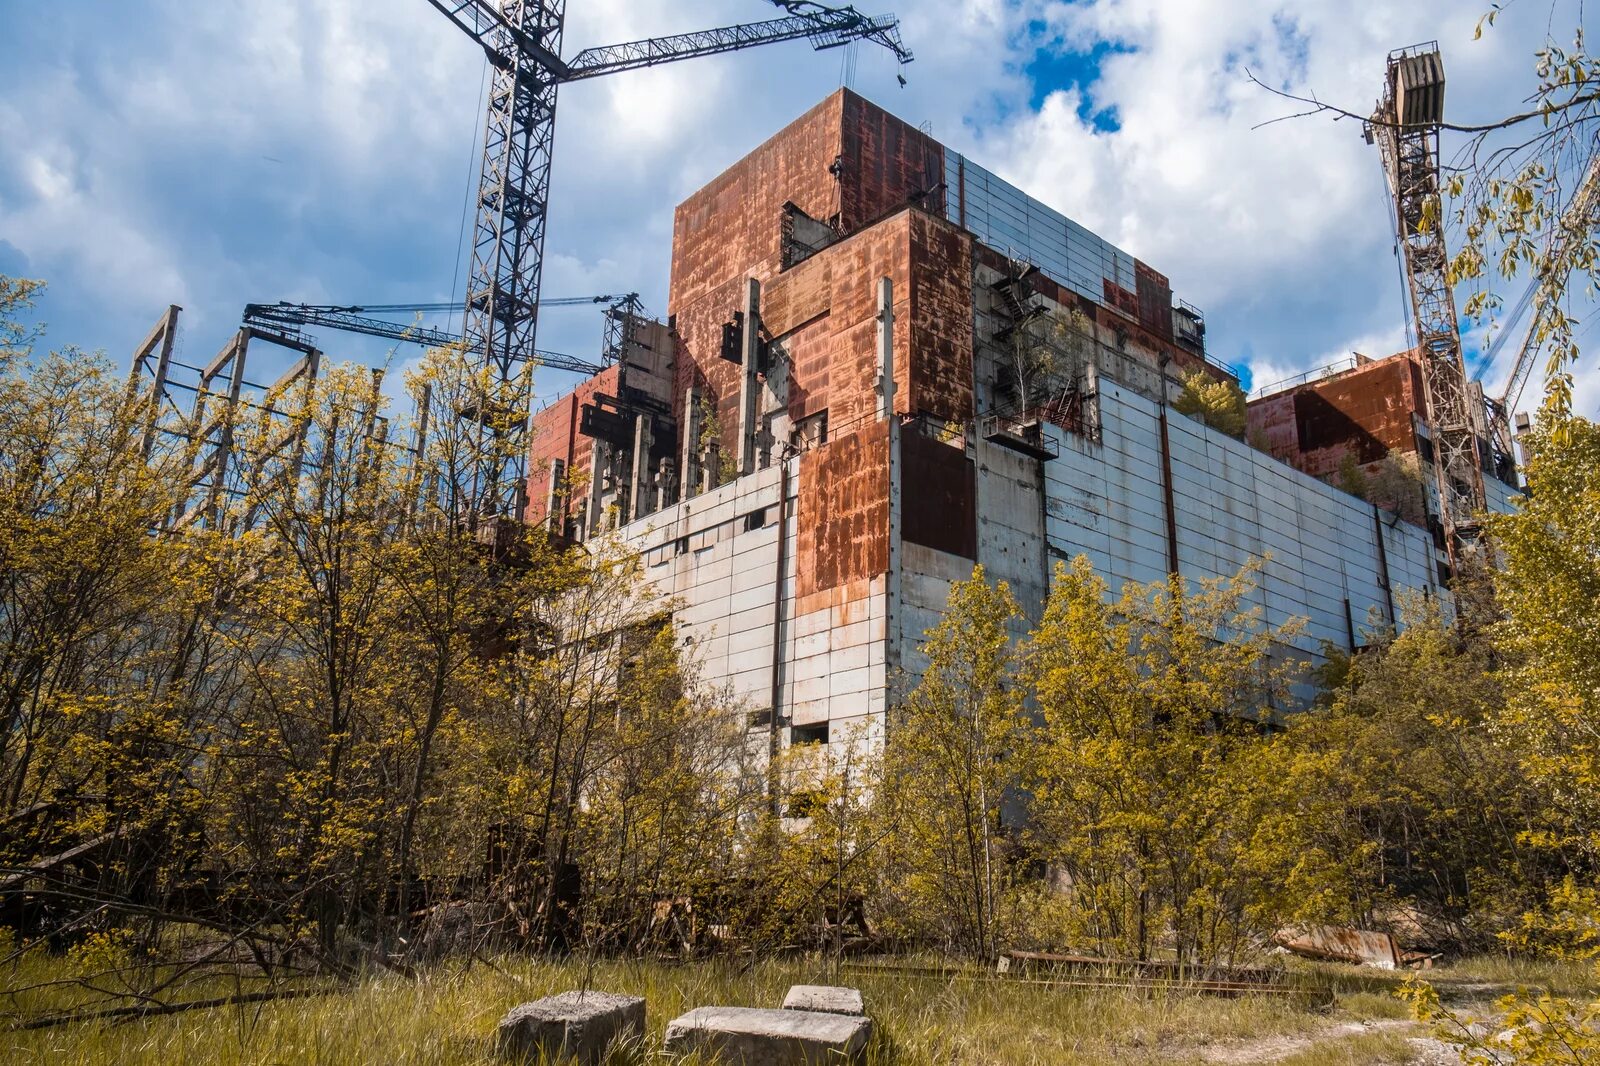 Chernobyl zone. Припять Чернобыль ЧАЭС зона отчуждения. Чернобыль зона отчуждения ЧАЭС. Чернобыль зона ЧАЭС. Припять четвертый энергоблок.